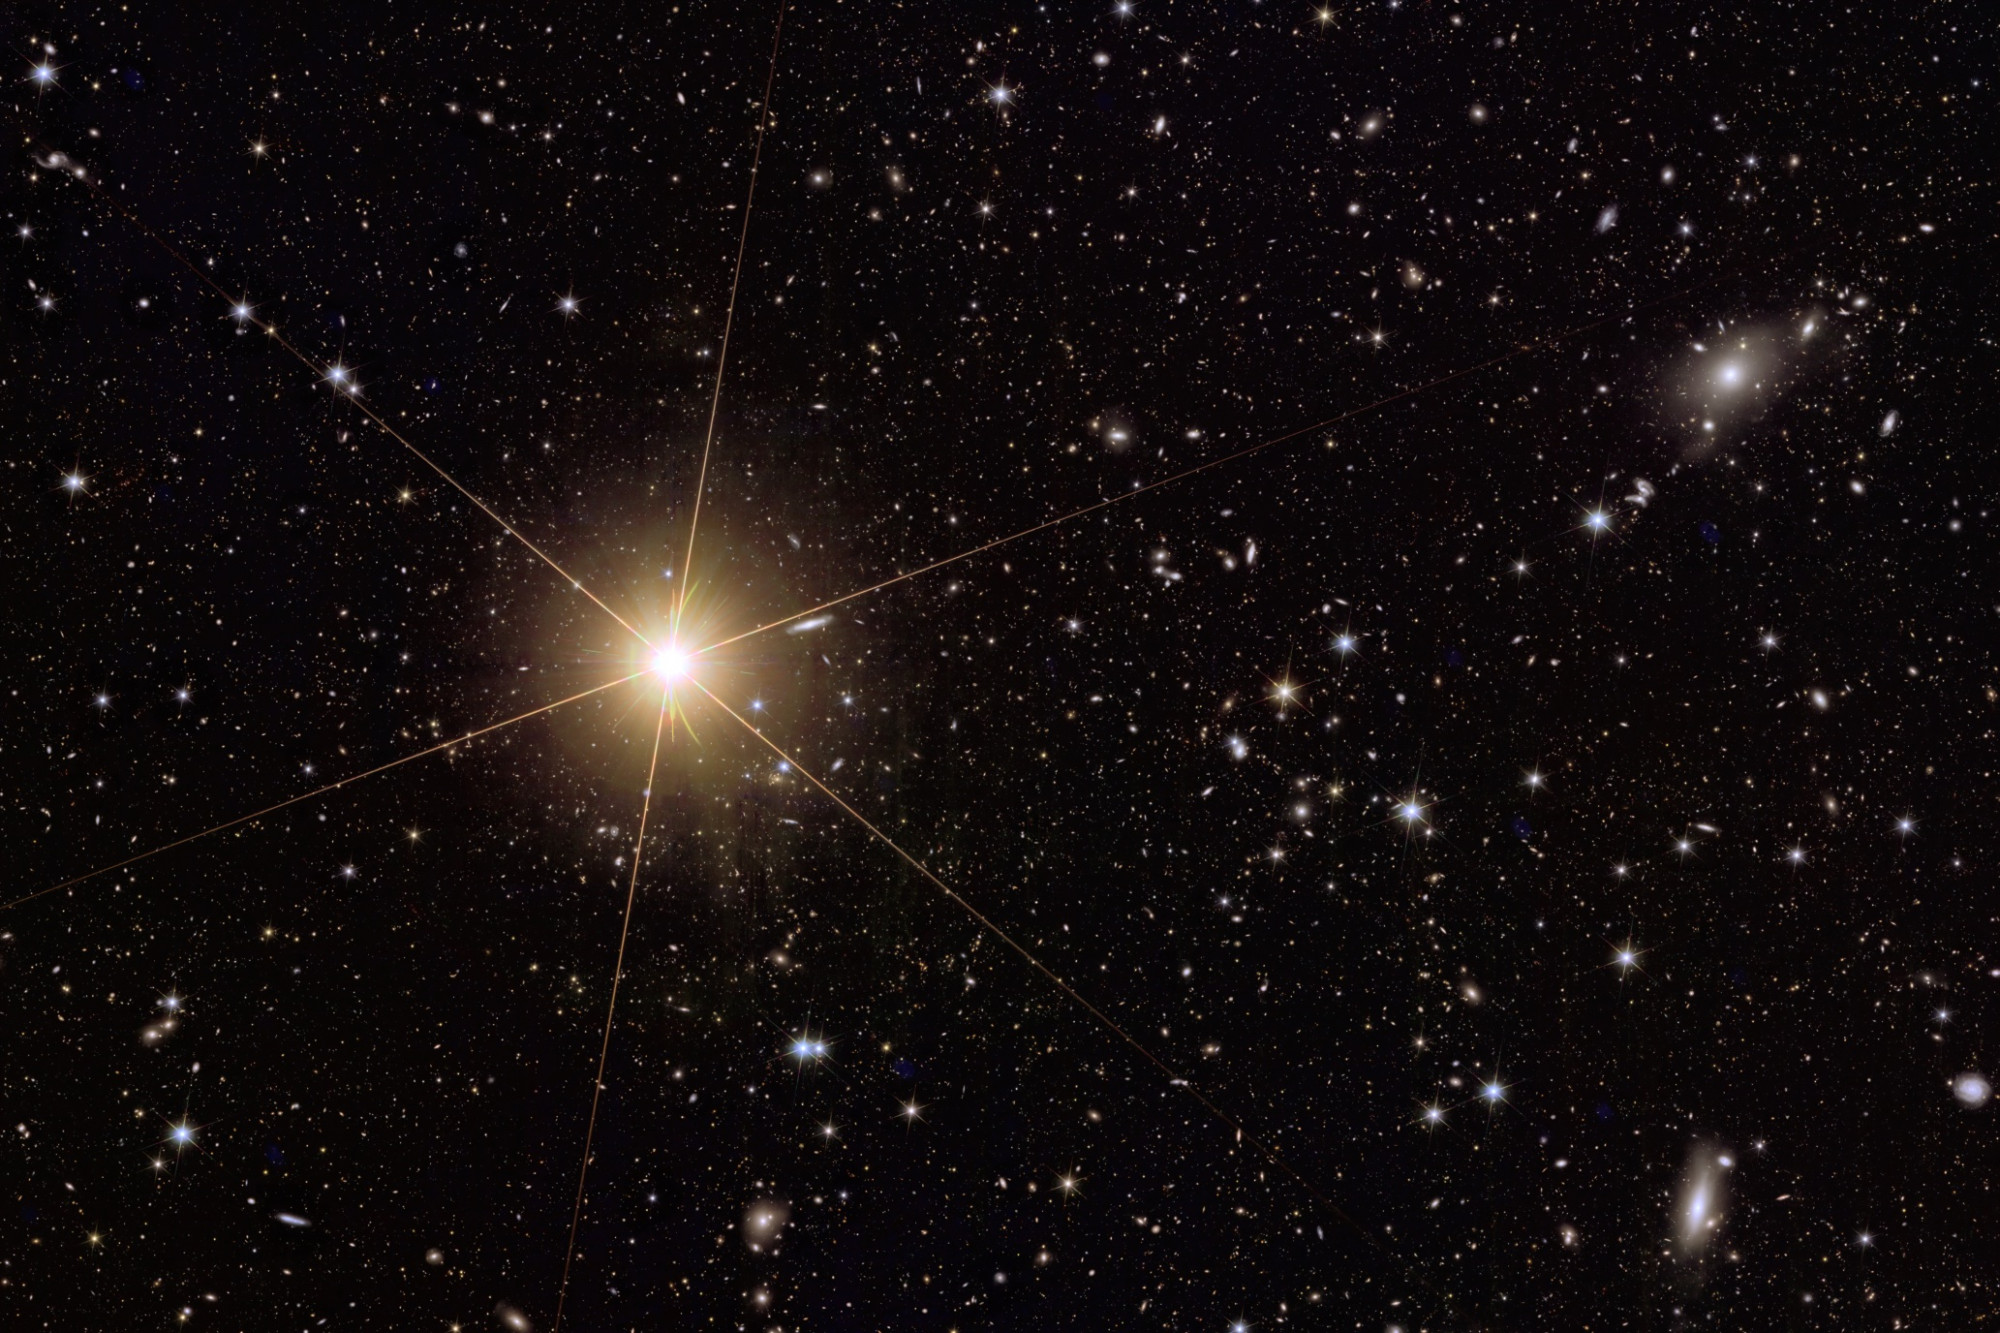 Az Abell 2764 galaxishalmaz és egy tejútrendszerbeli csillag (bal oldalt) a Euclid űrtávcső felvételén. A kép az eredeti egy kivágott részlete.